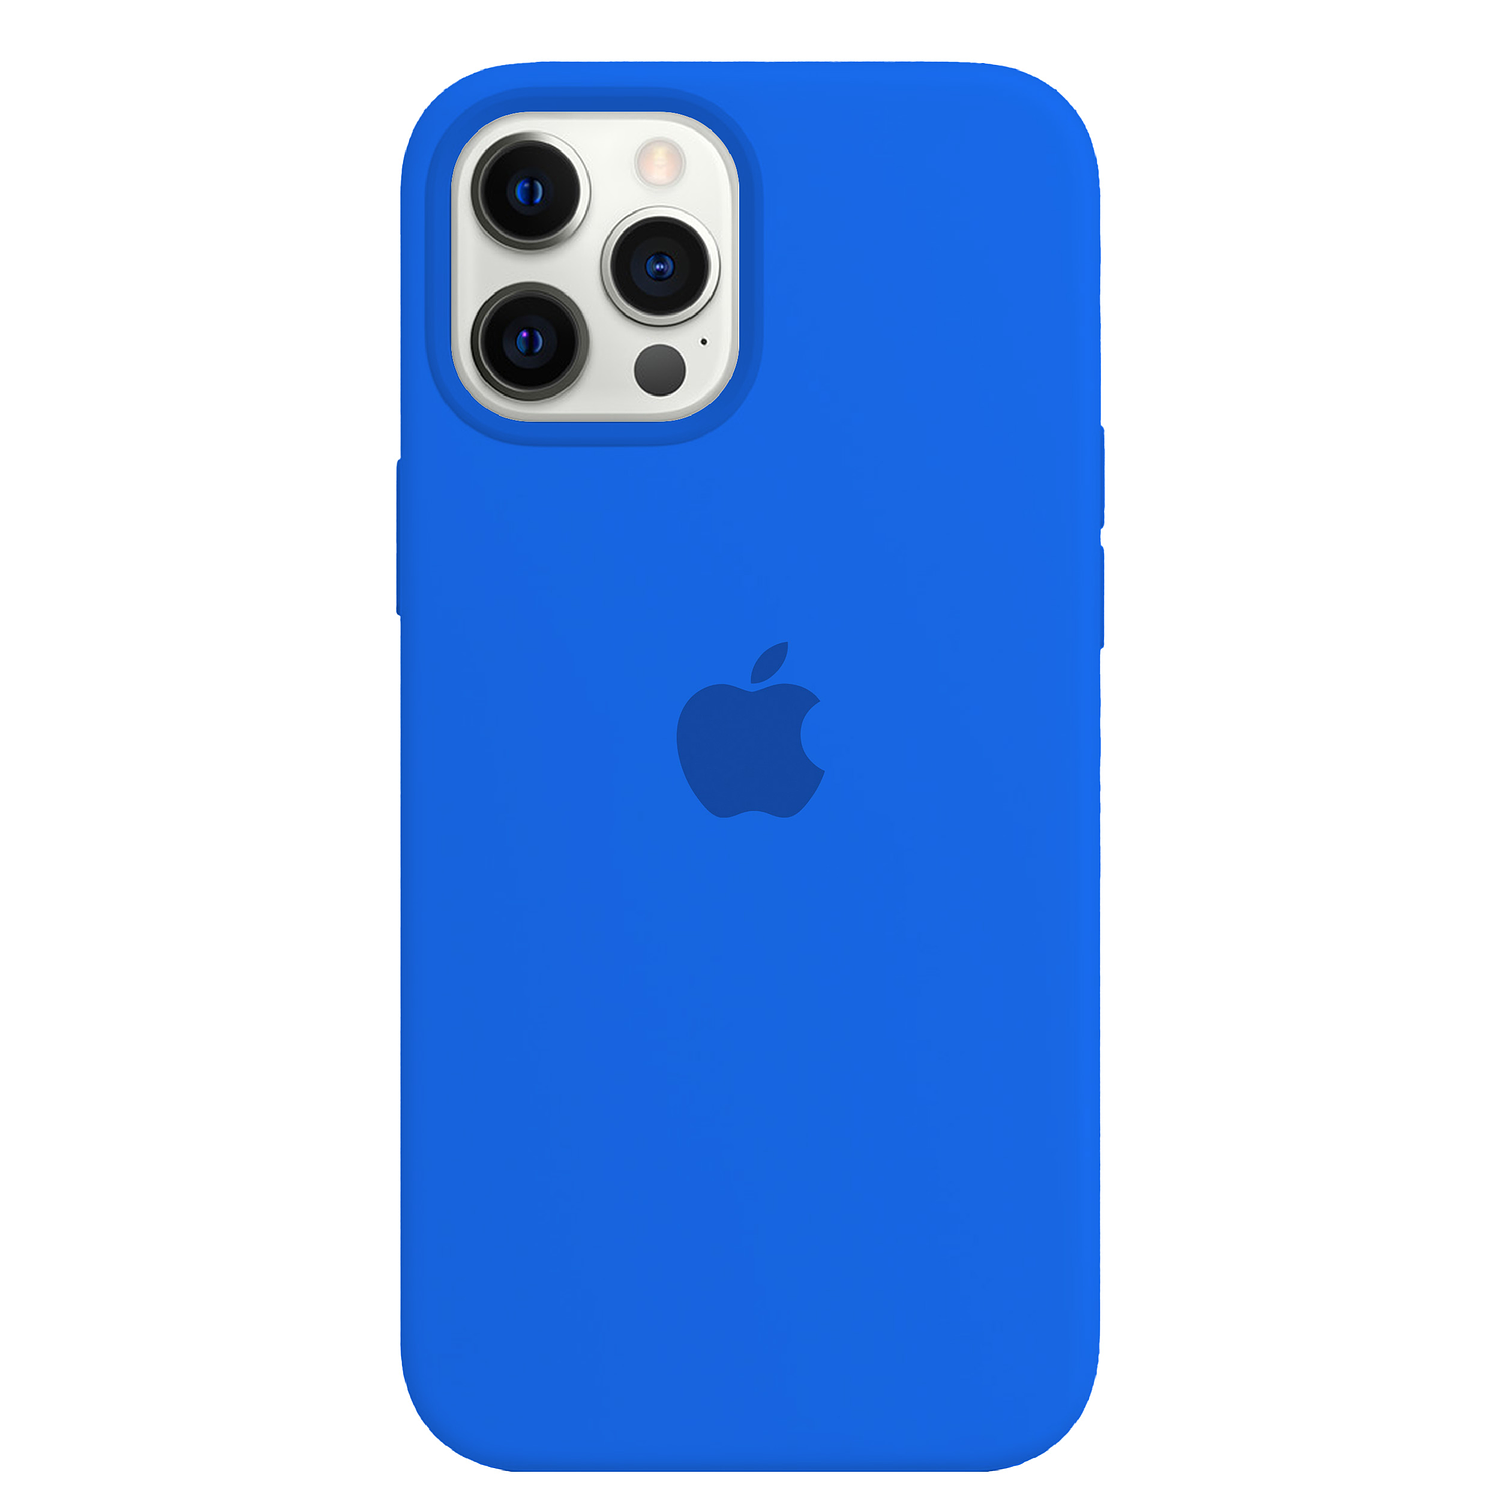 Carcasa de Silicona - iPhone 12 Pro Max 9